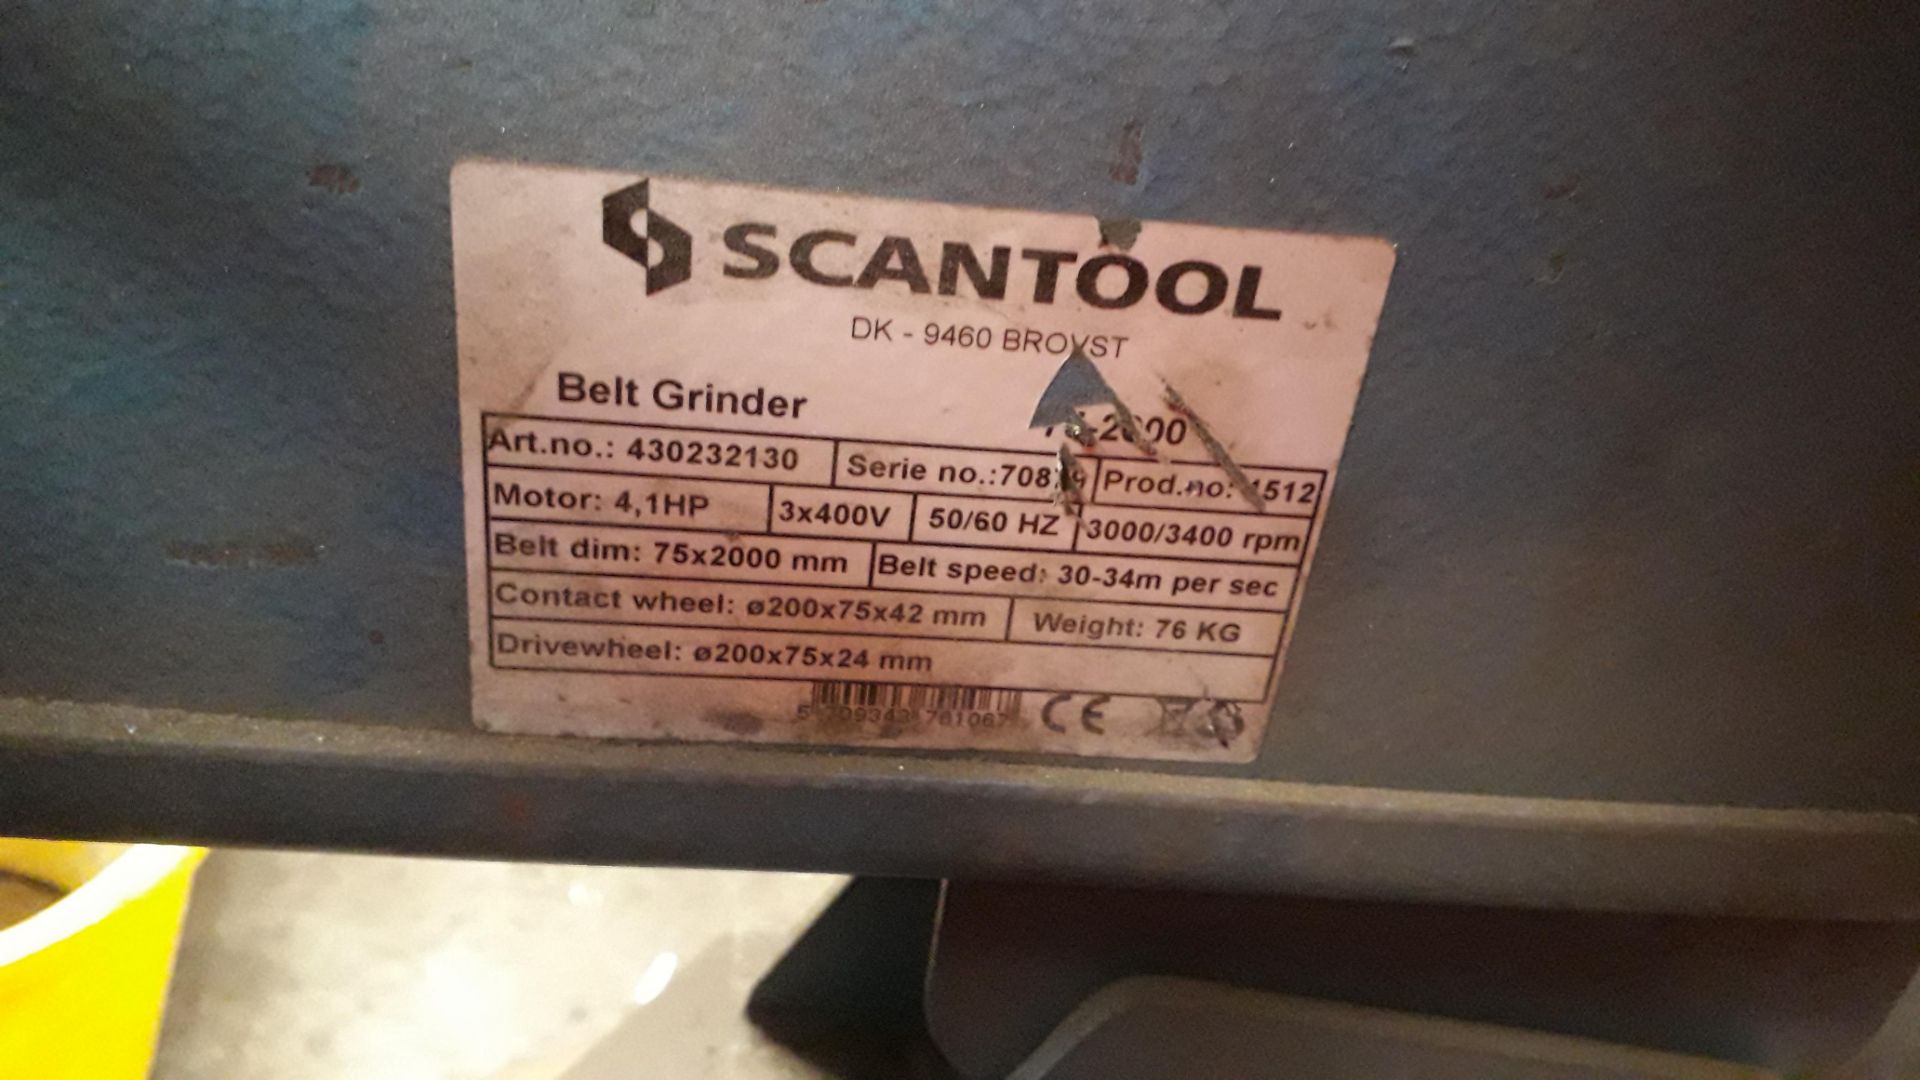 Scantool 75-2000 3” Belt Grinder (2000) Serial Number 70839 - Image 2 of 2